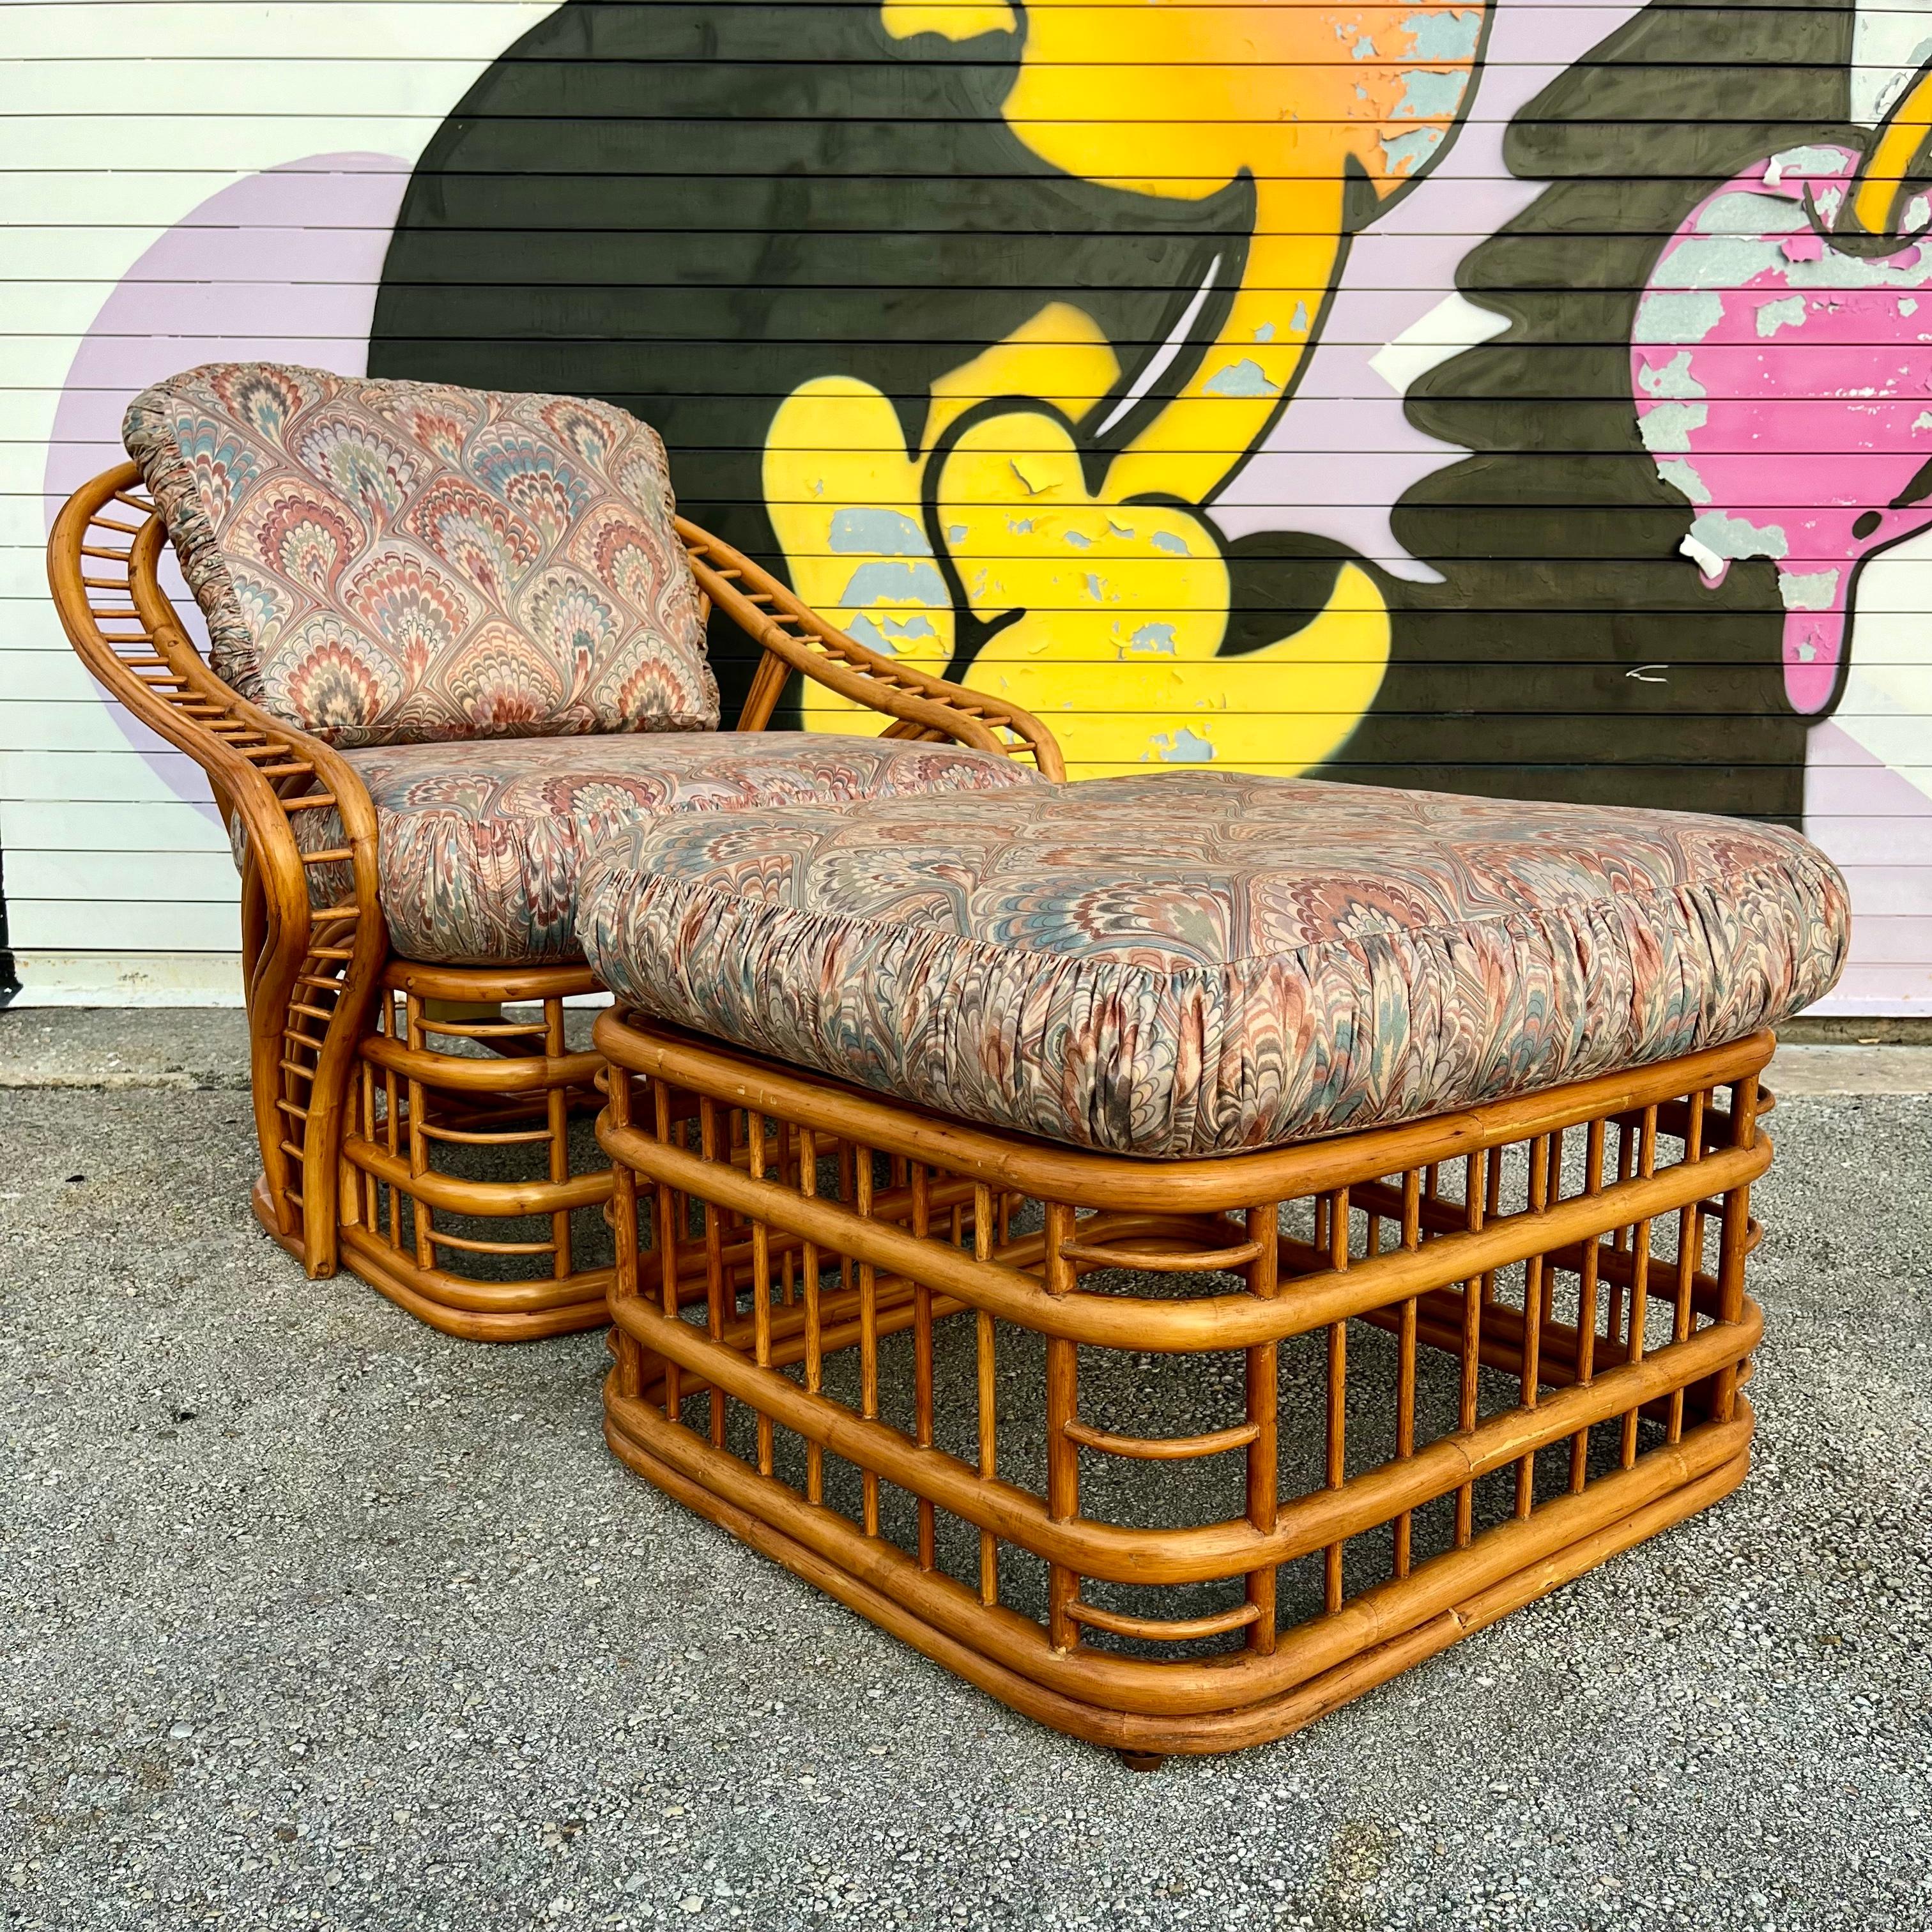 Vintage Coastal Style Rattan Lounge Chair und Ottoman Set von Whitecraft Rattan Inc, Miami FL. Circa 1970er Jahre
Der Rahmen aus gebogenem Rattan ist mit einem komplizierten und dynamischen, fließenden Design an der Rückenlehne und den Armlehnen